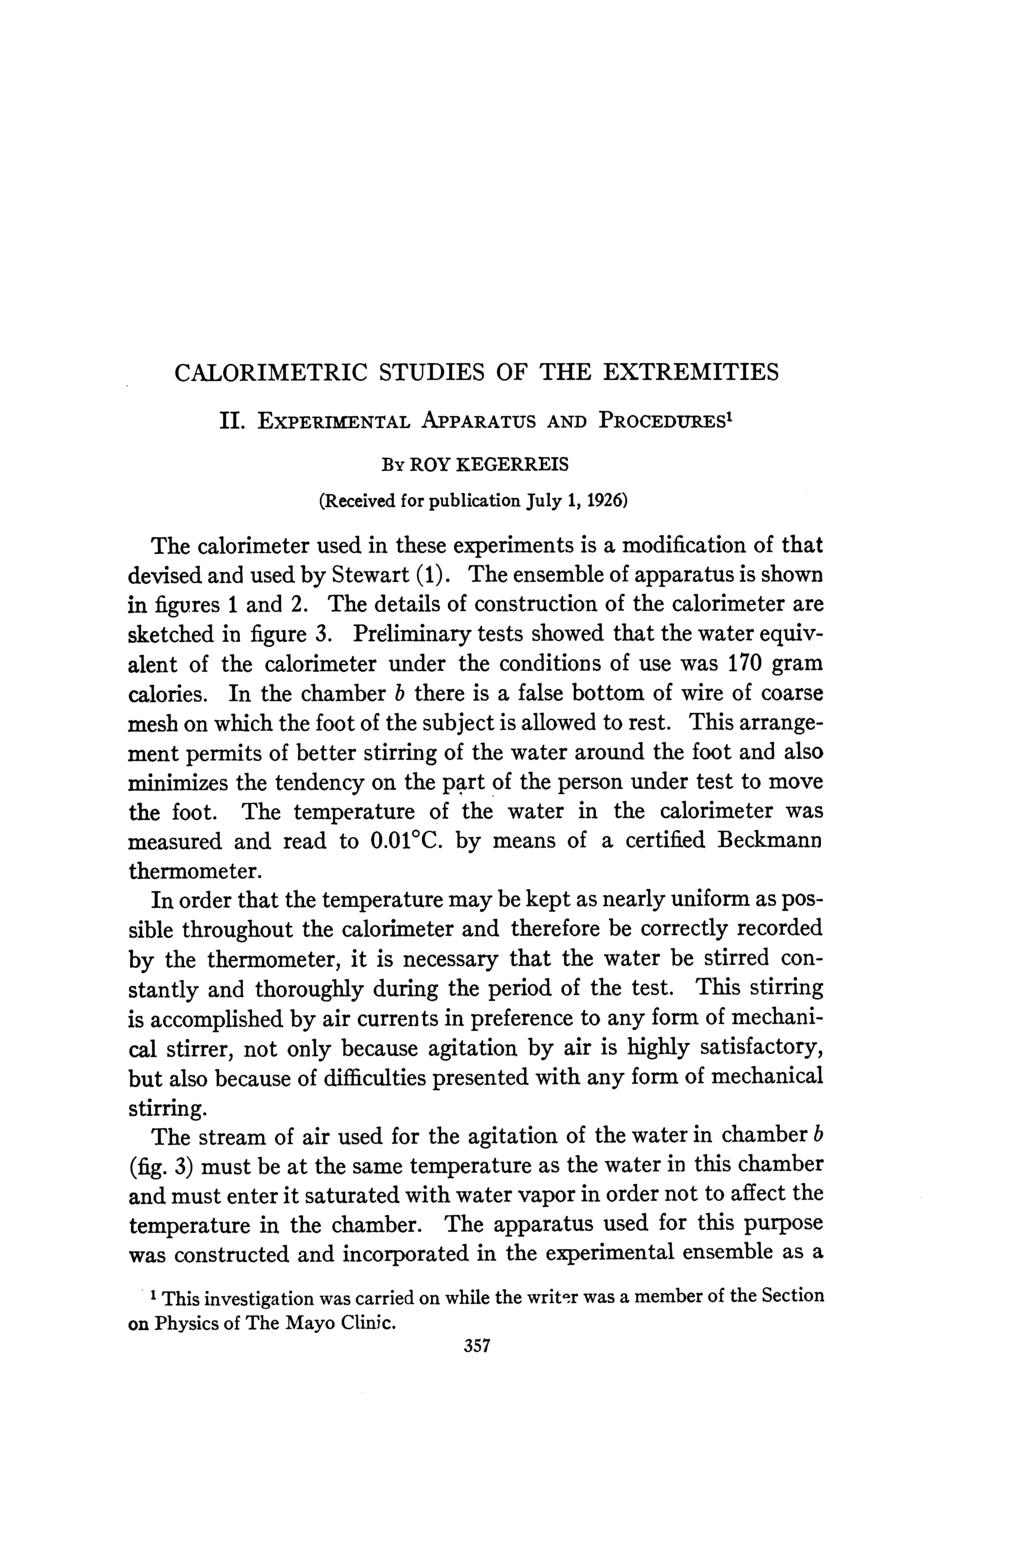 CALORIMETRIC STUDIES OF THE EXTREMITIES II.